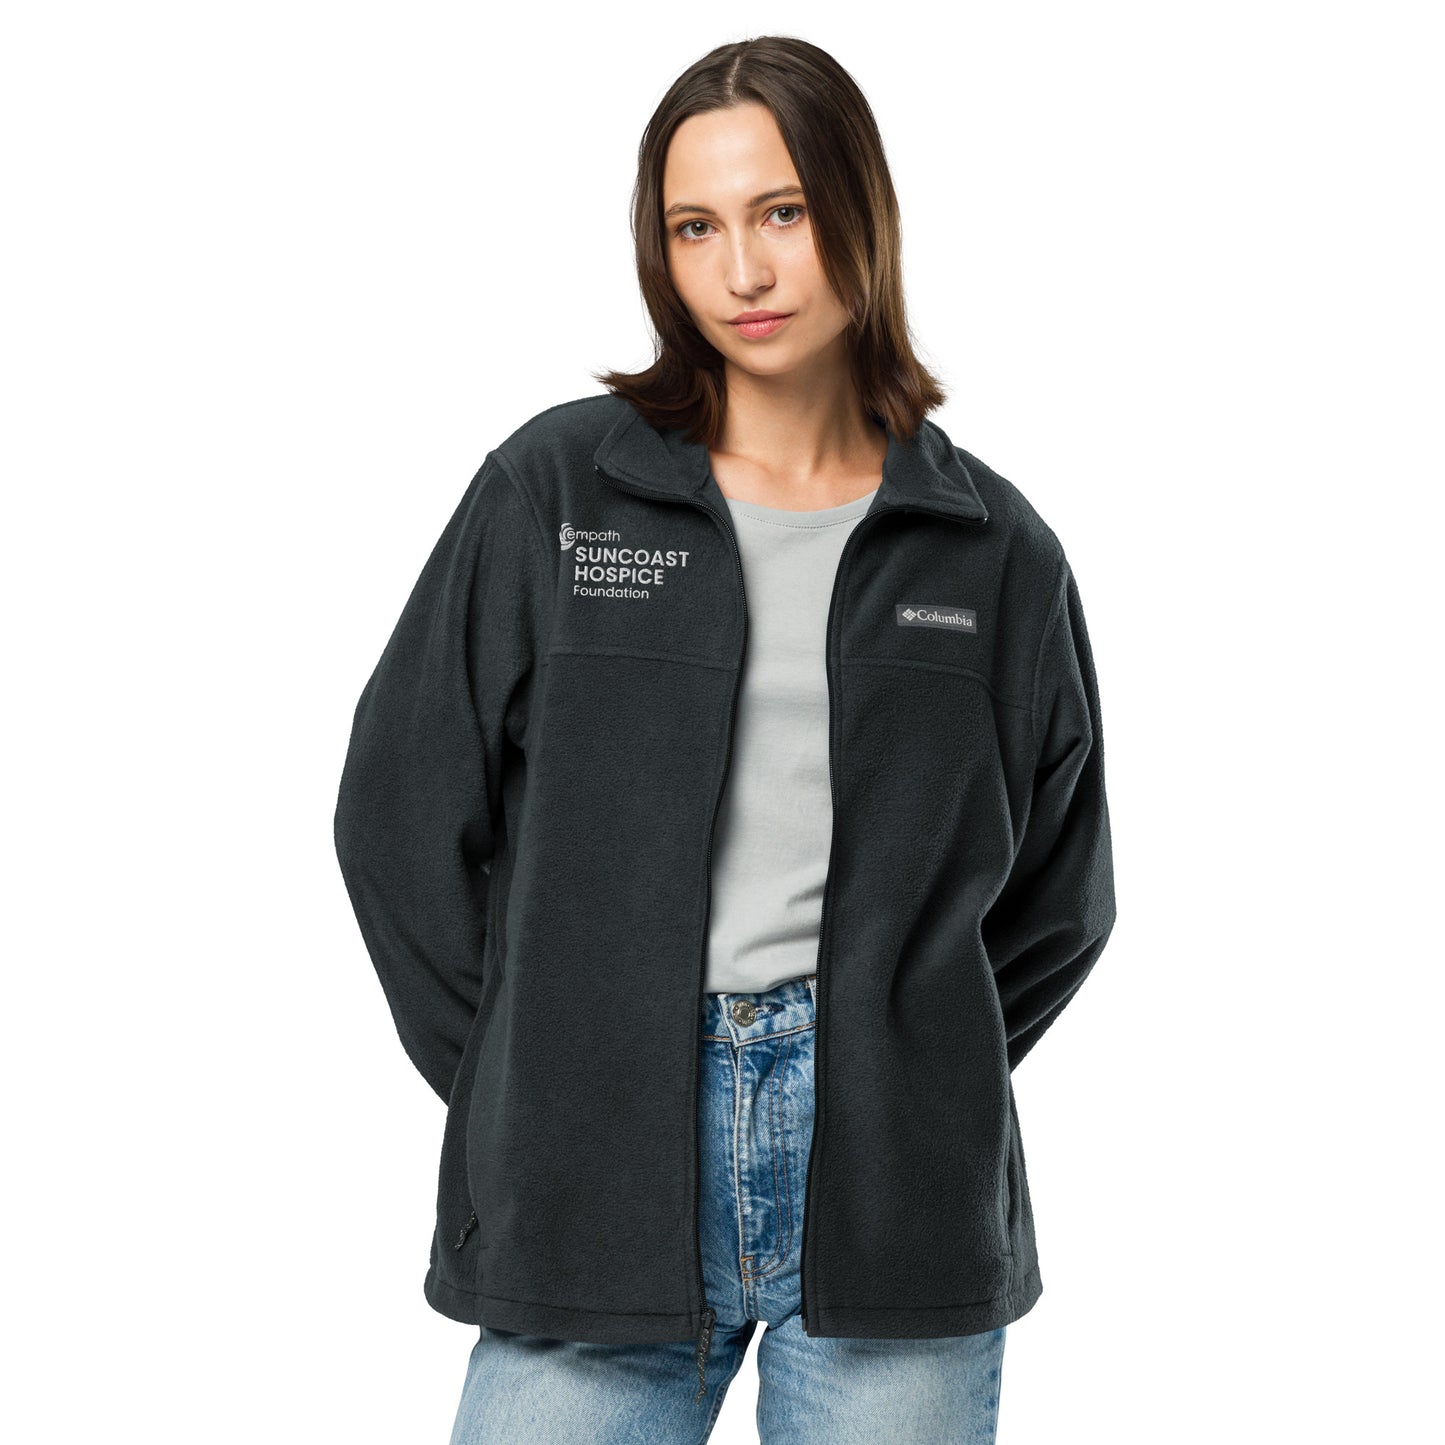 Columbia | Unisex fleece jacket (relaxed fit) - Suncoast Hospice Foundation